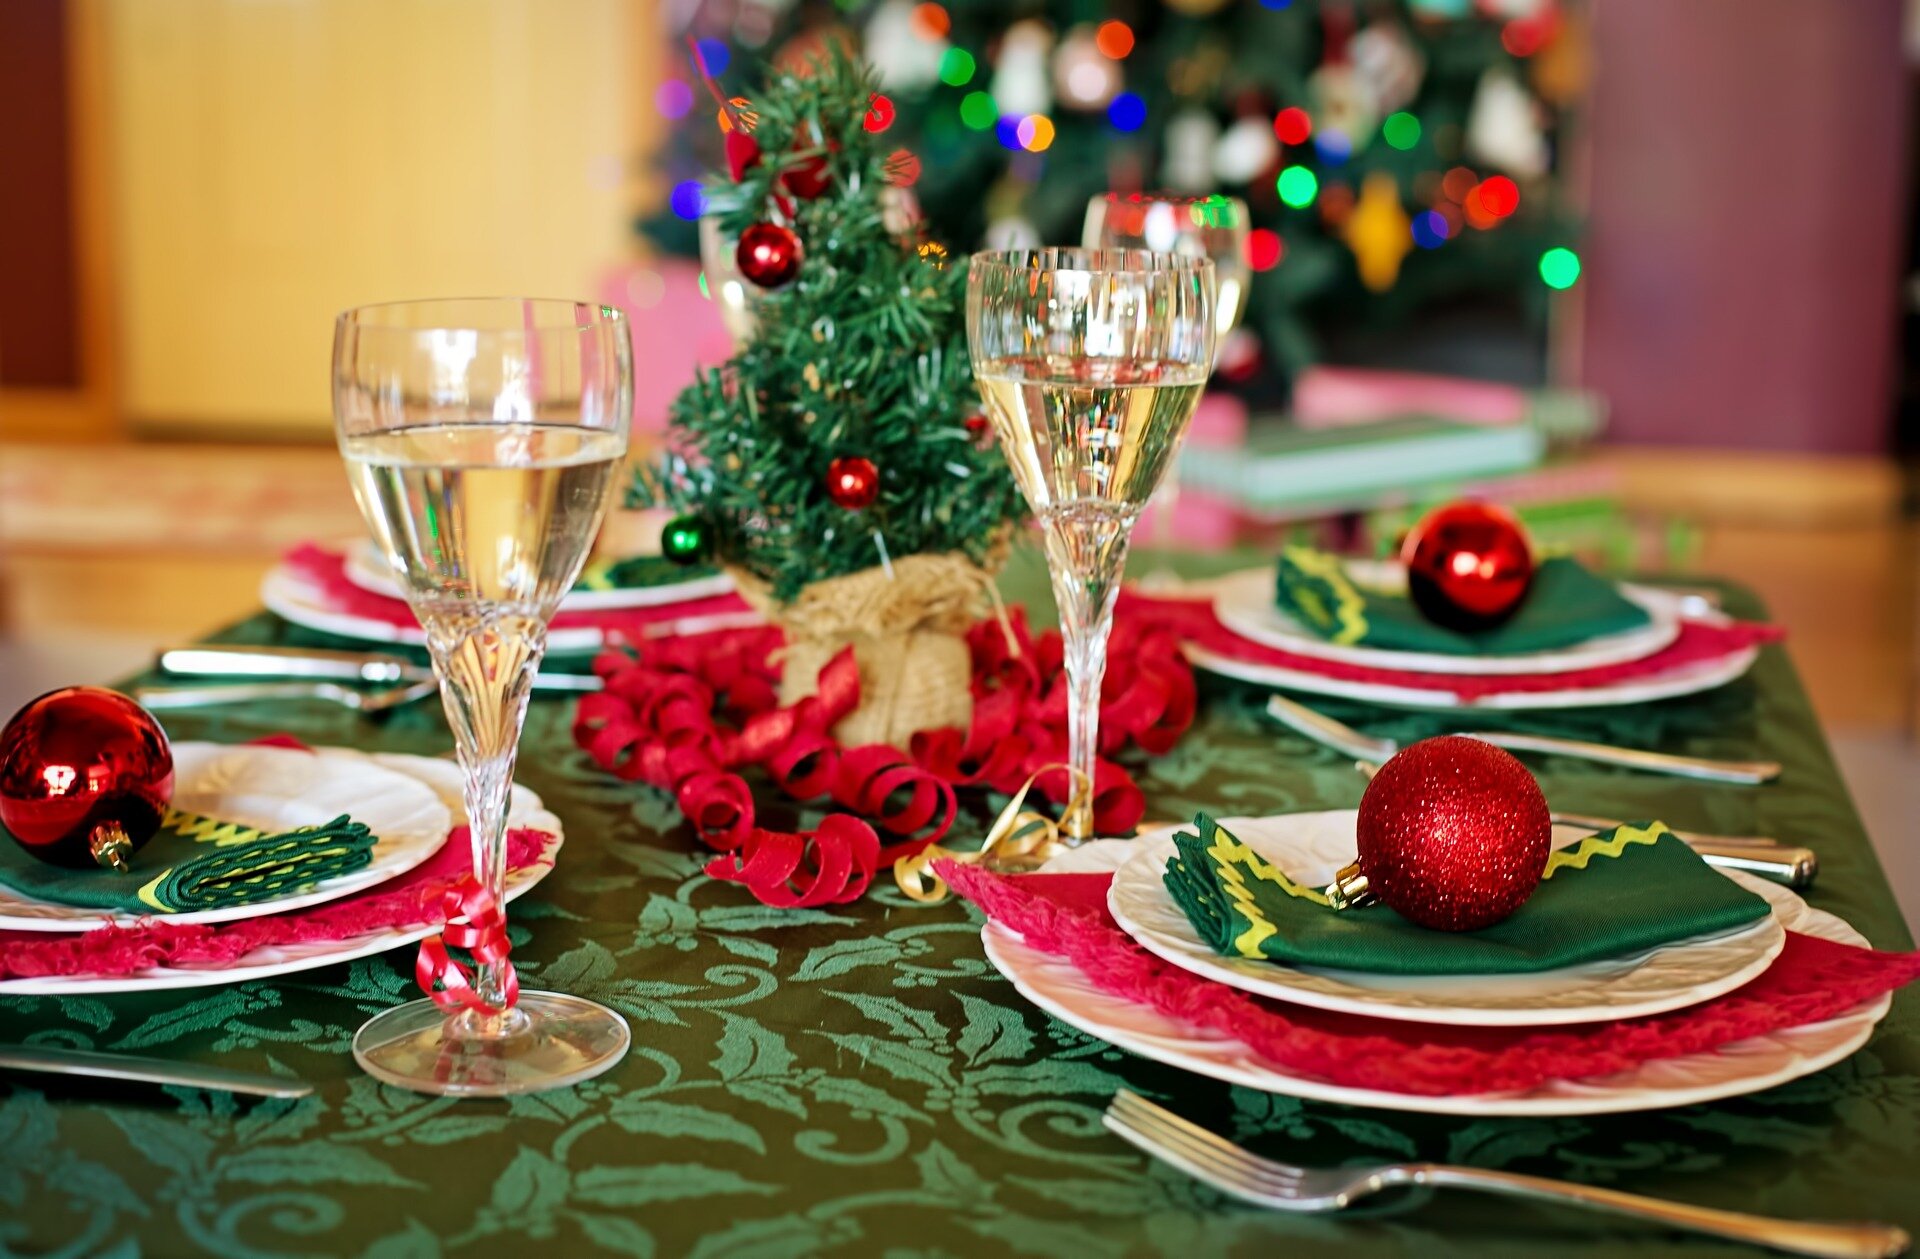 Naukowcy szerzą świąteczną radość, ponieważ badania pokazują, że świąteczny obiad może być zdrowy